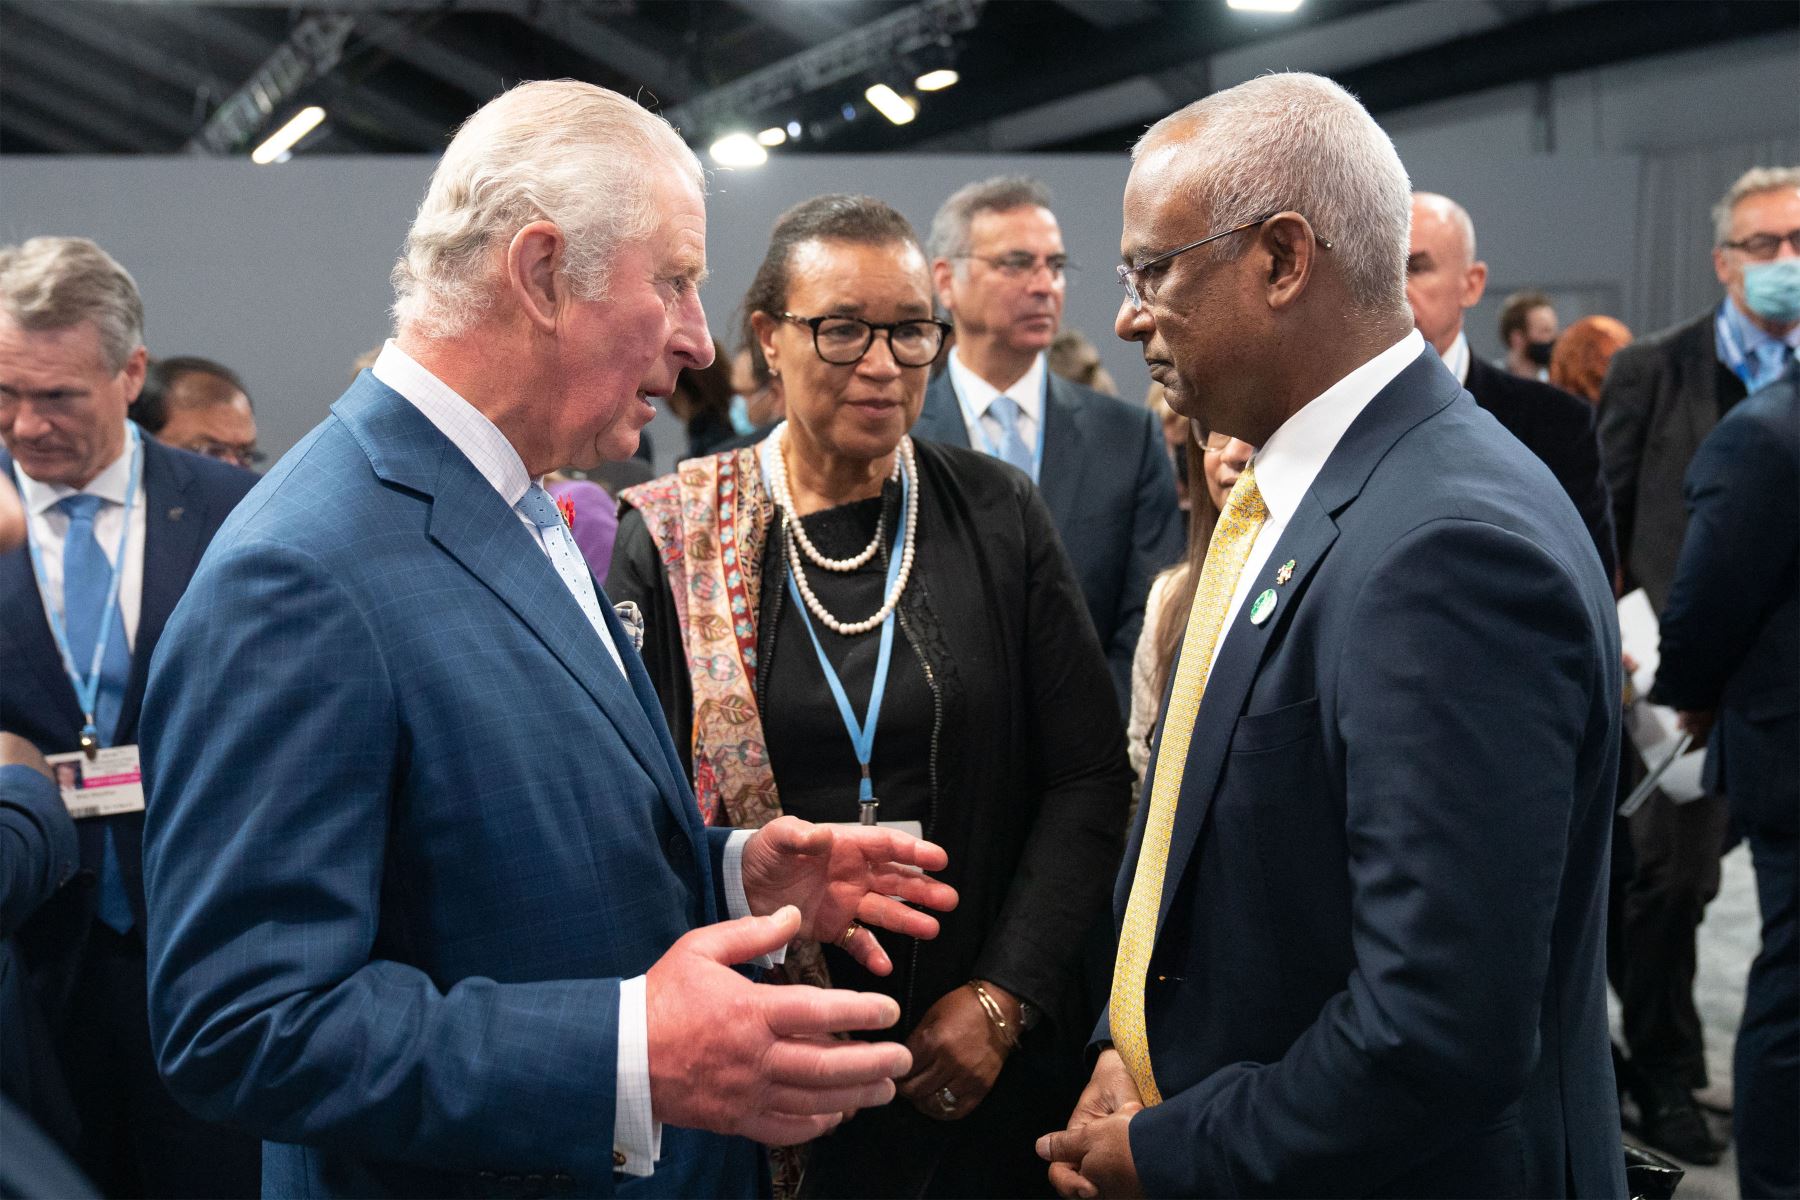 El príncipe Carlos de Gran Bretaña conversa con el presidente de las Maldivas, Ibrahim Mohamed Solih, durante la recepción de los líderes de la Commonwealth durante la Conferencia sobre el clima COP26 en el Scottish Event Campus en Glasgow, Escocia.
Foto: AFP